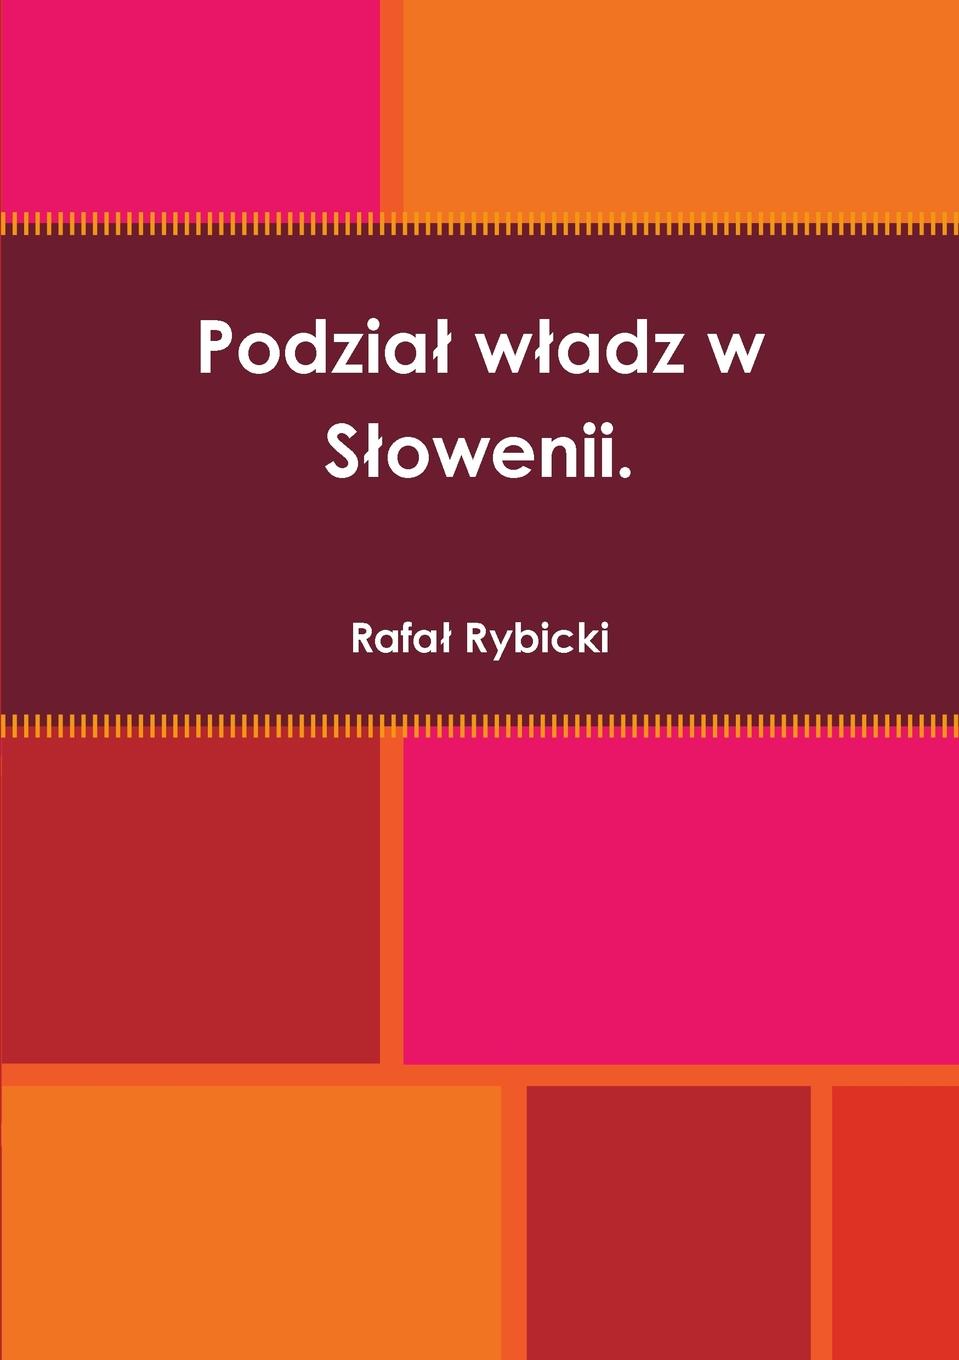 Rafał Rybicki Podzia